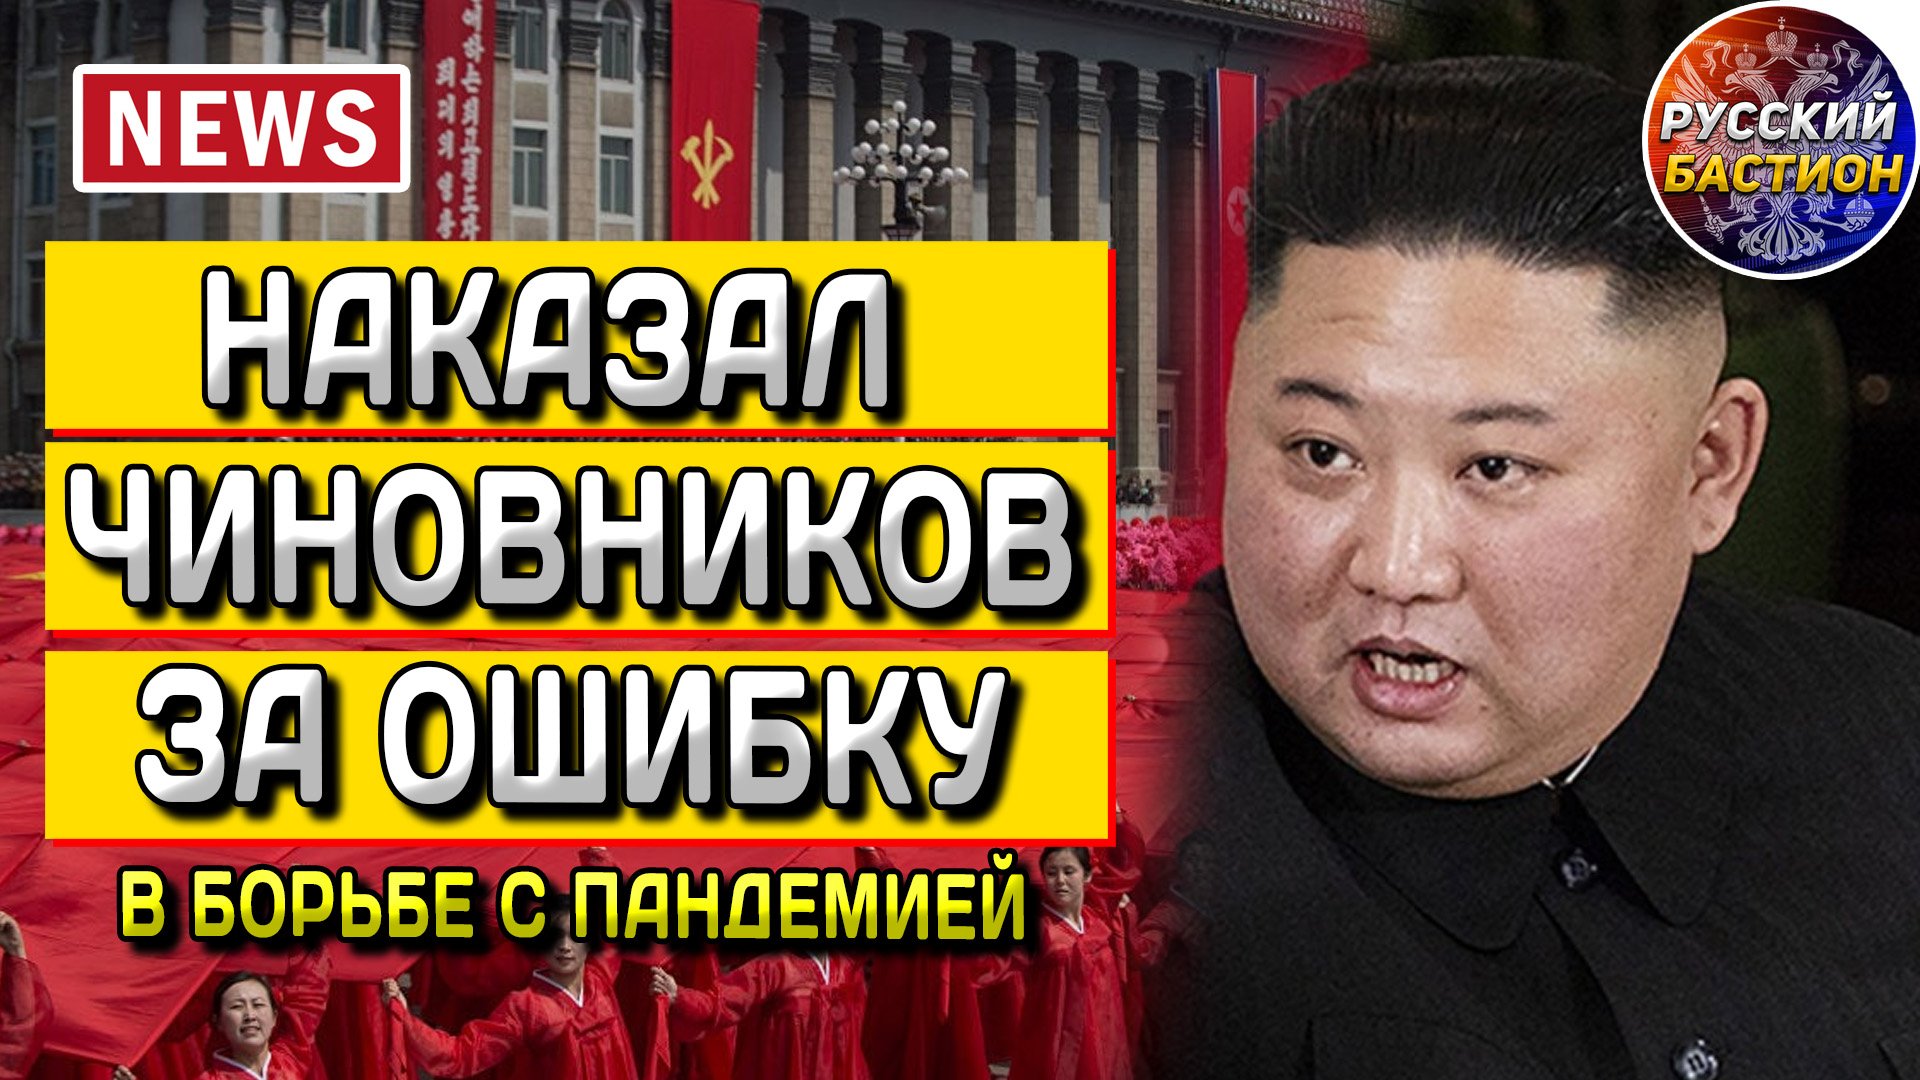 Срочно - Лидер КНДР наказал чиновников за ошибку - Политические новости сегодня - Новости сегодня